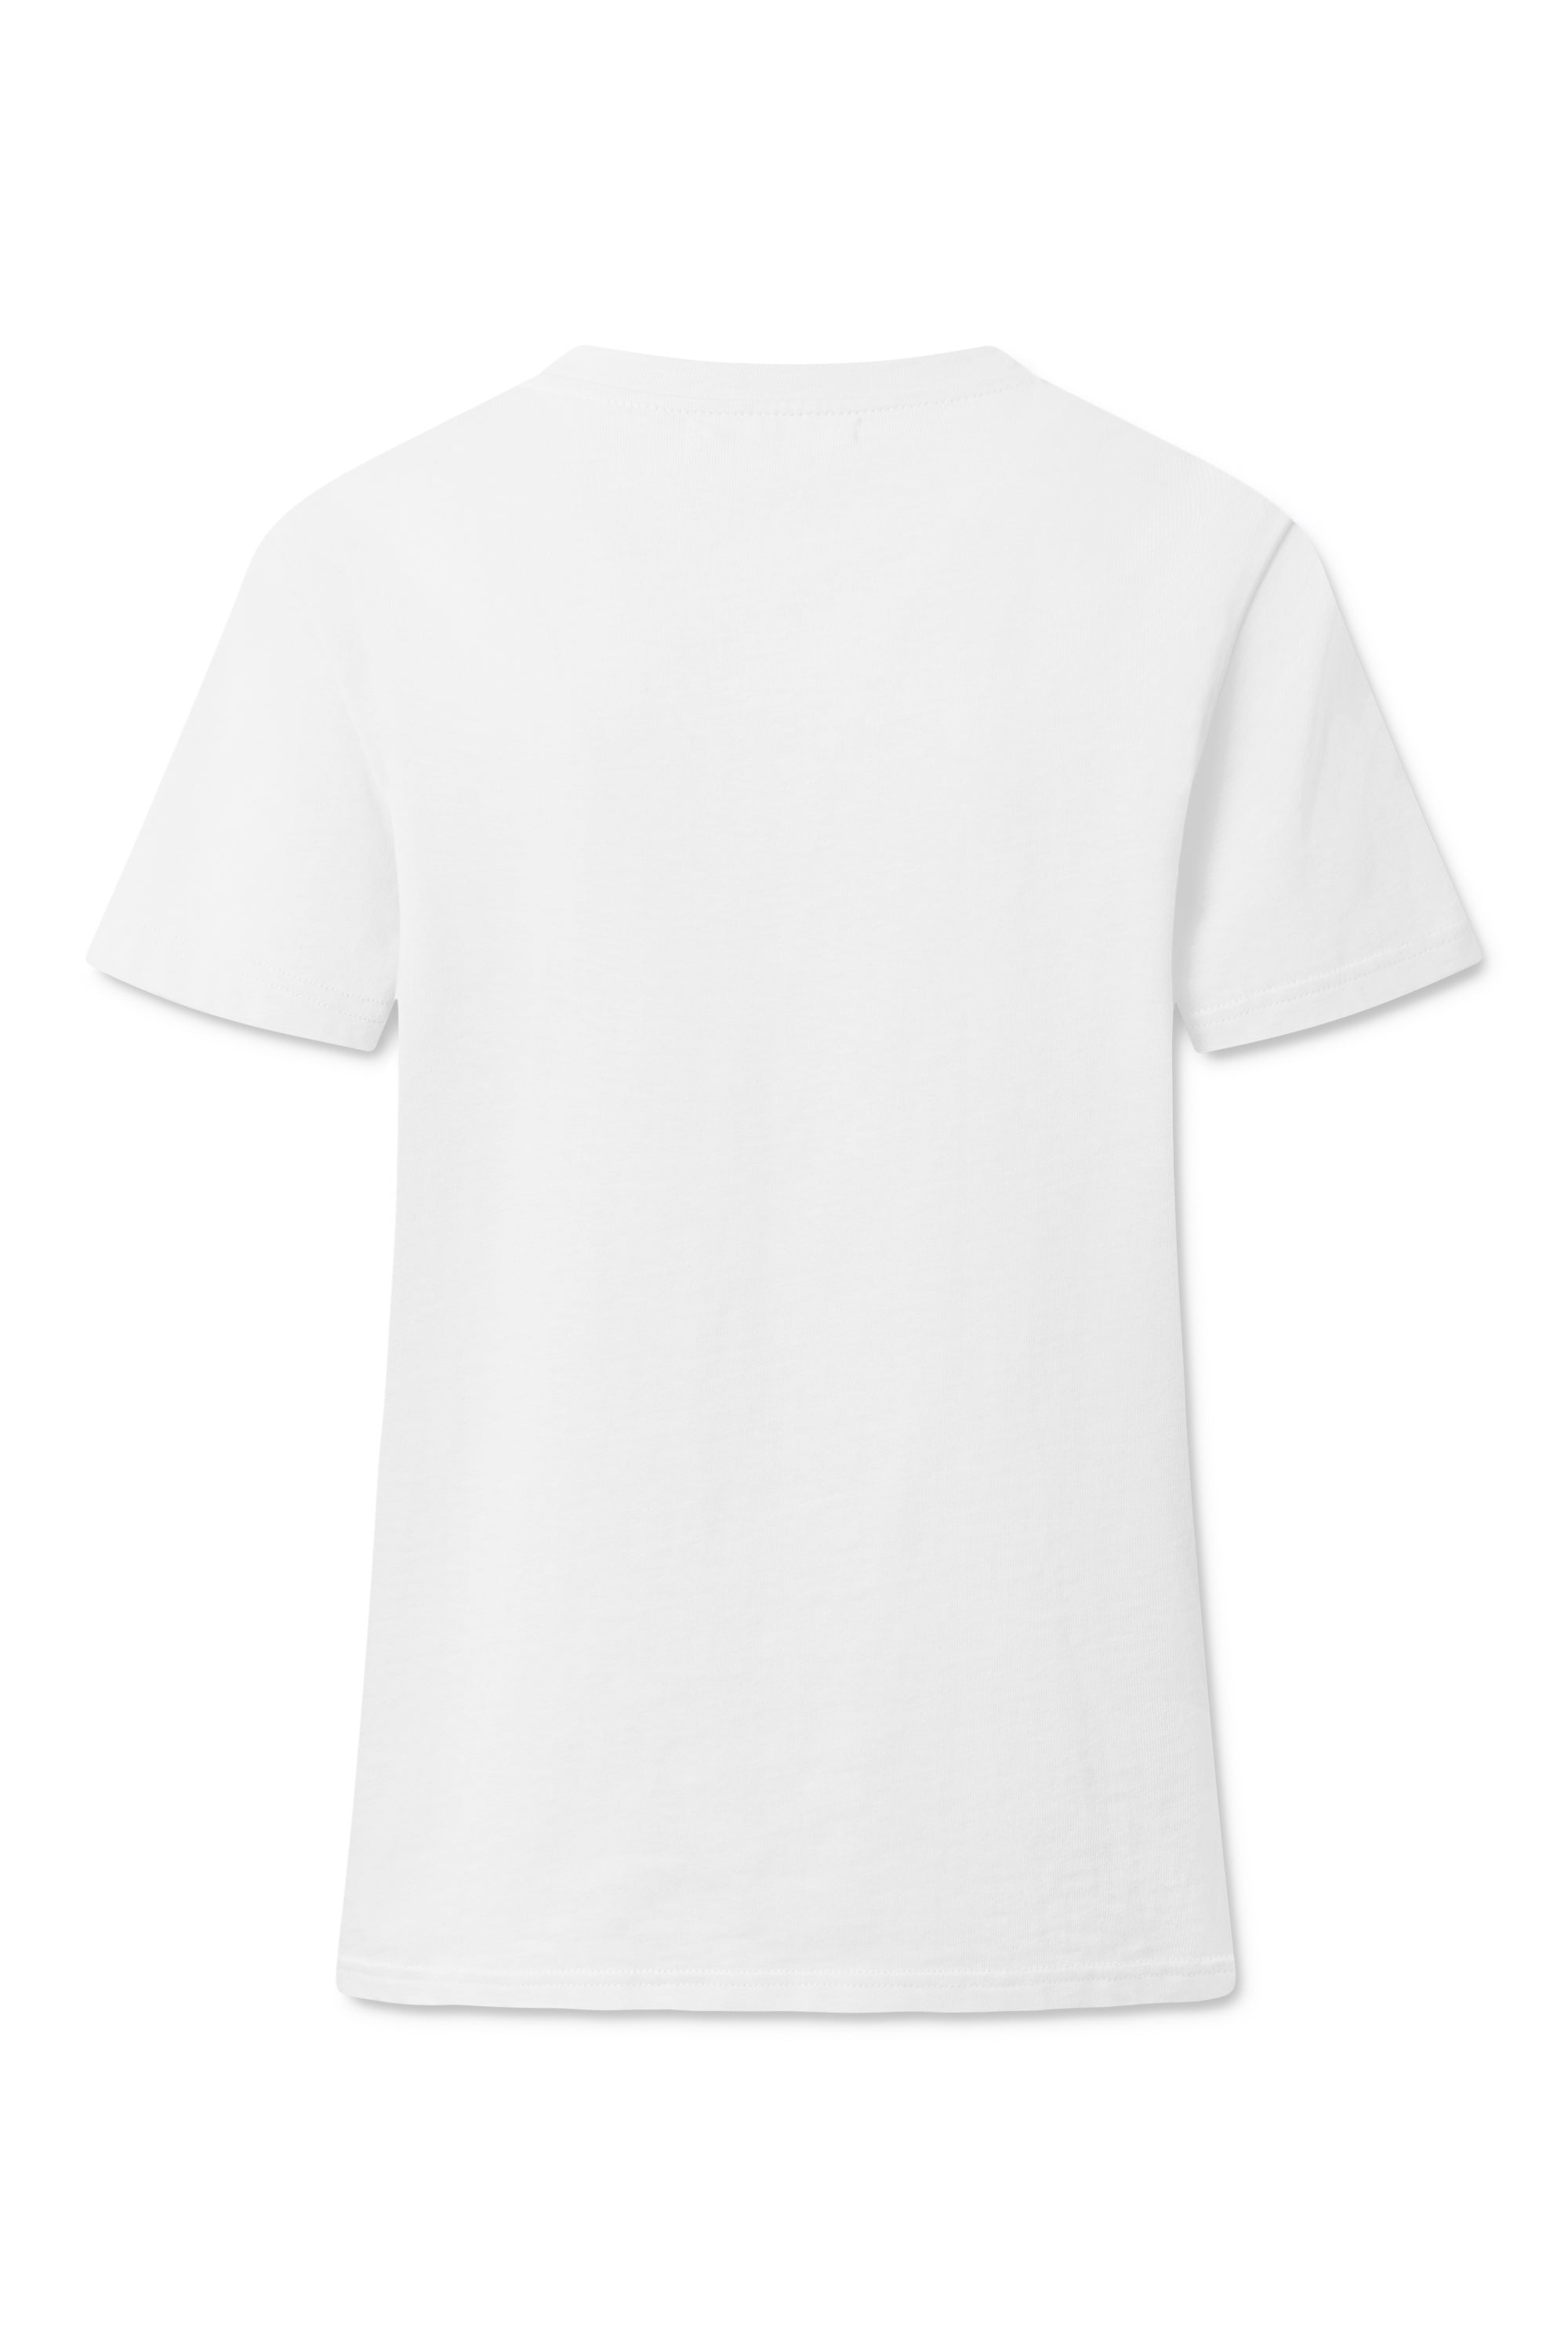 nué notes Mik T-Shirt BLOUSES 900 Bright White